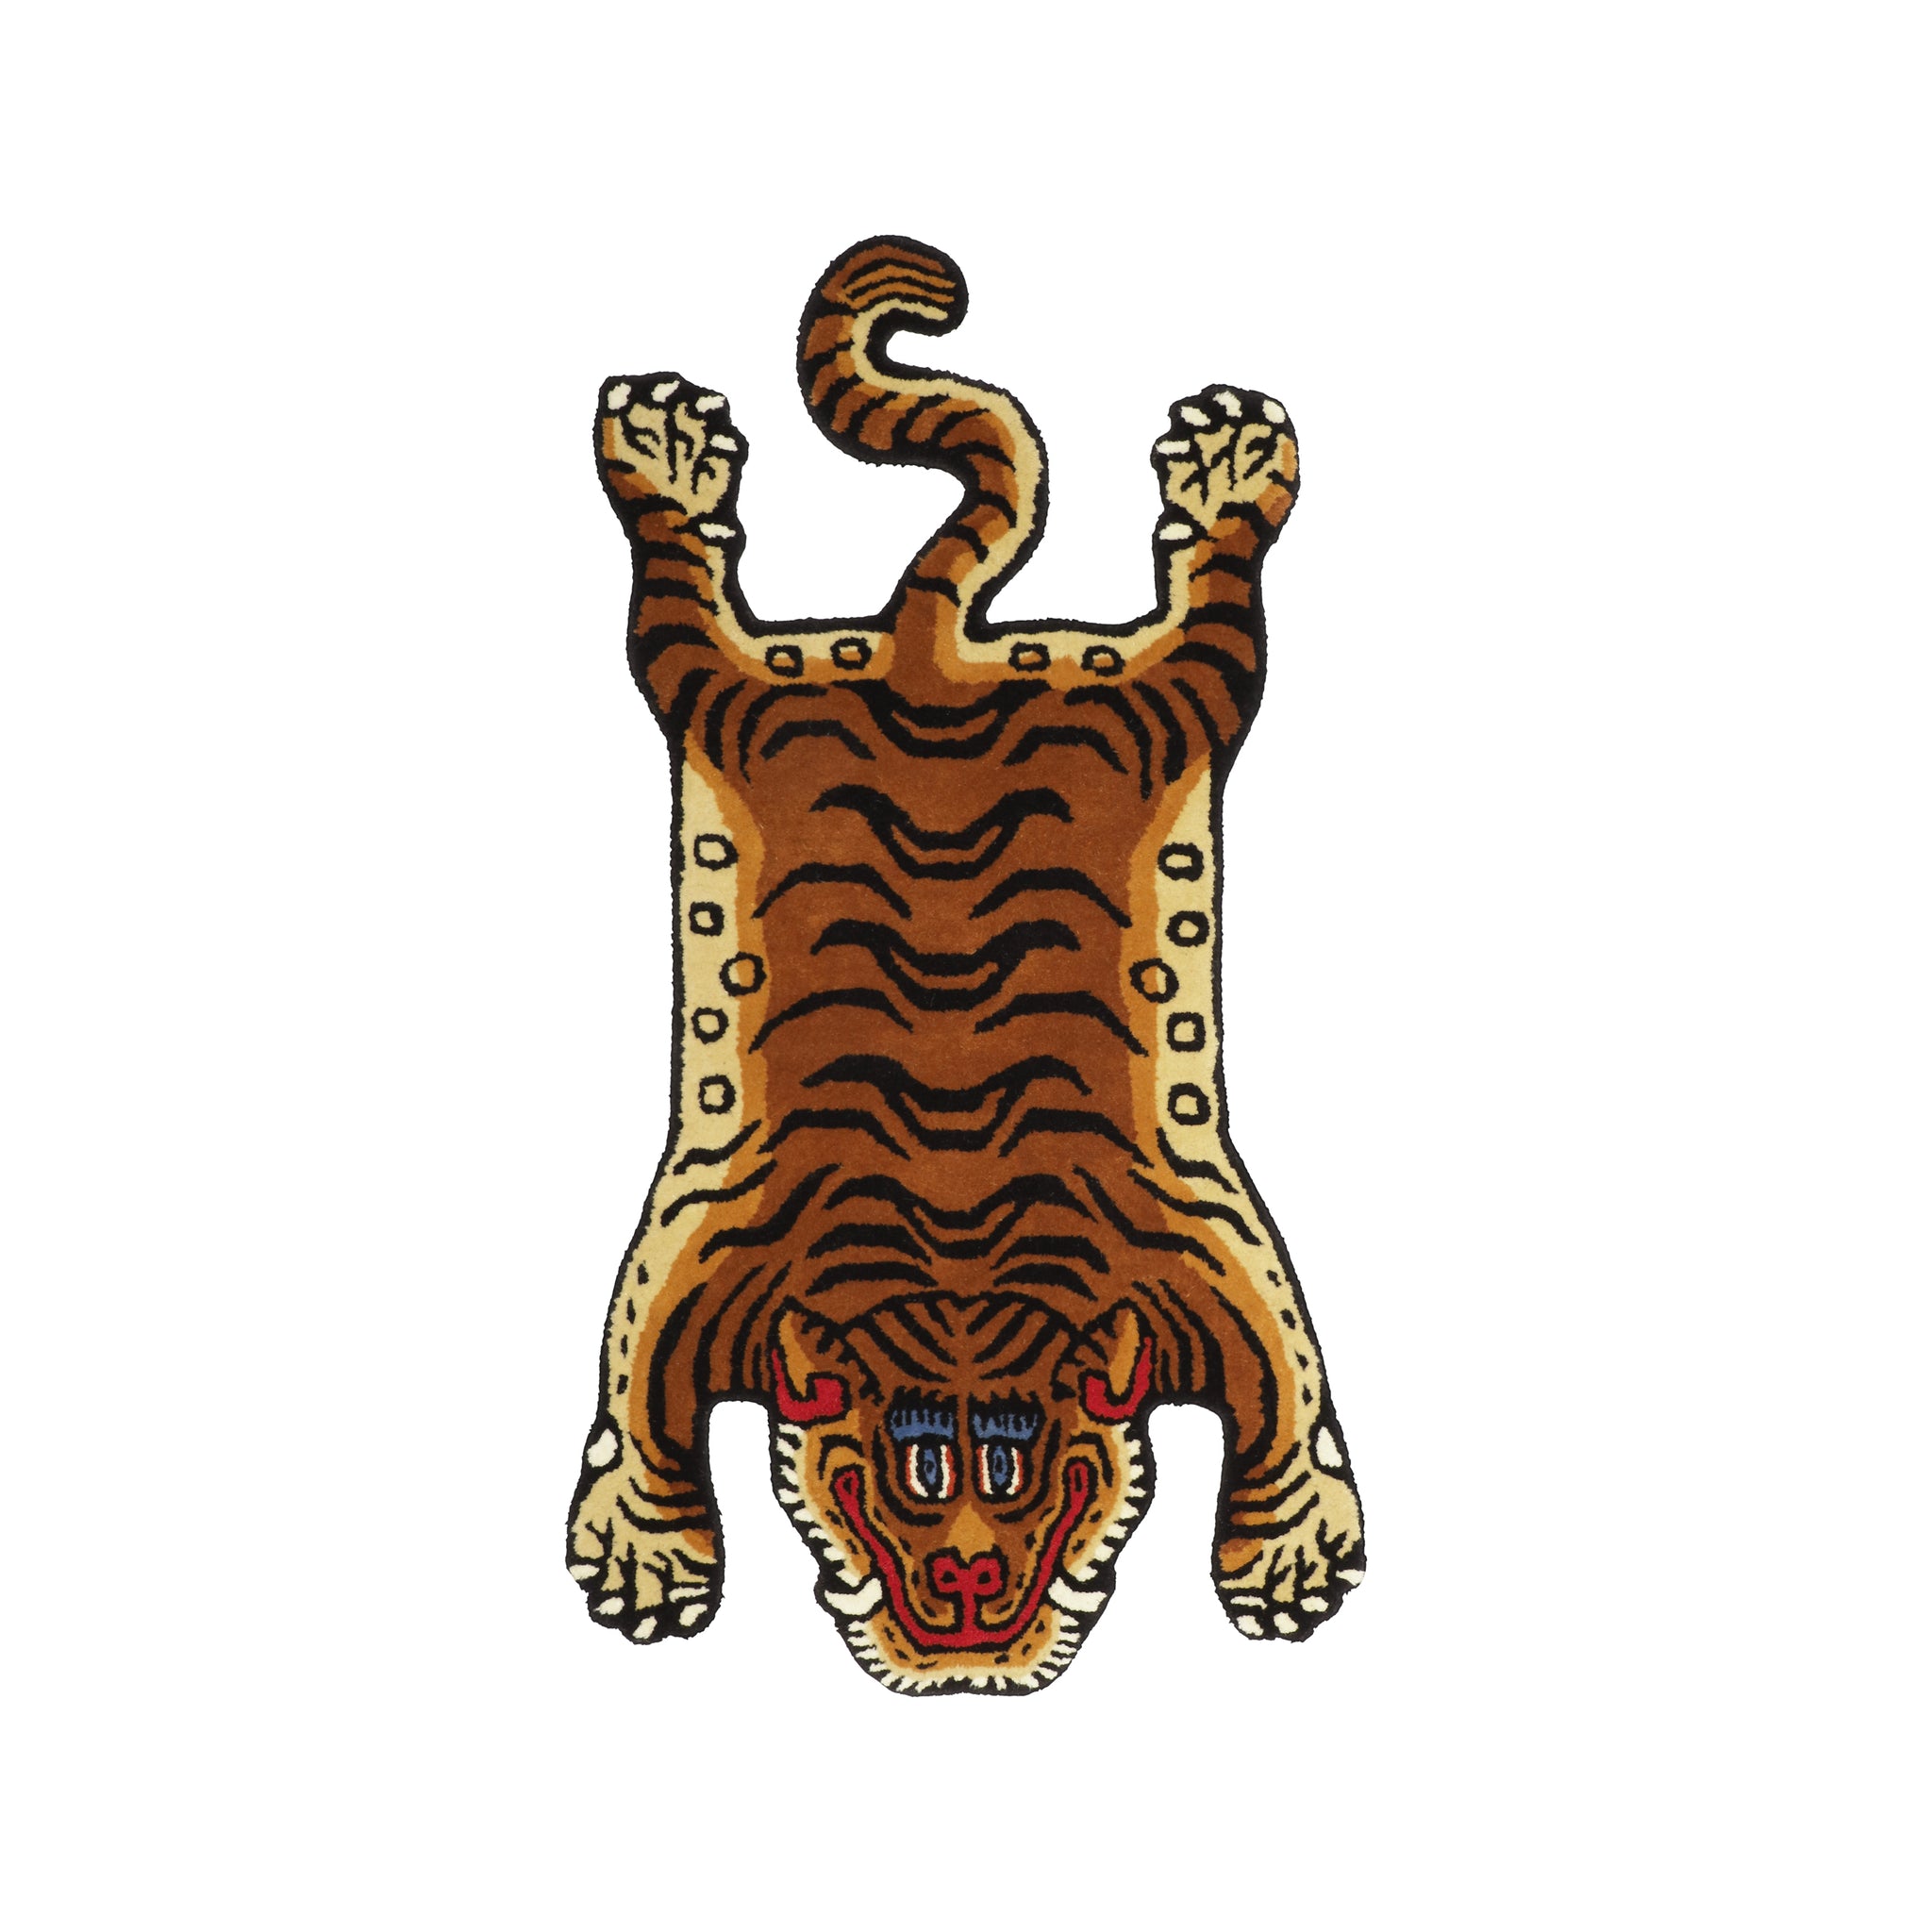 Burma Tiger Rug